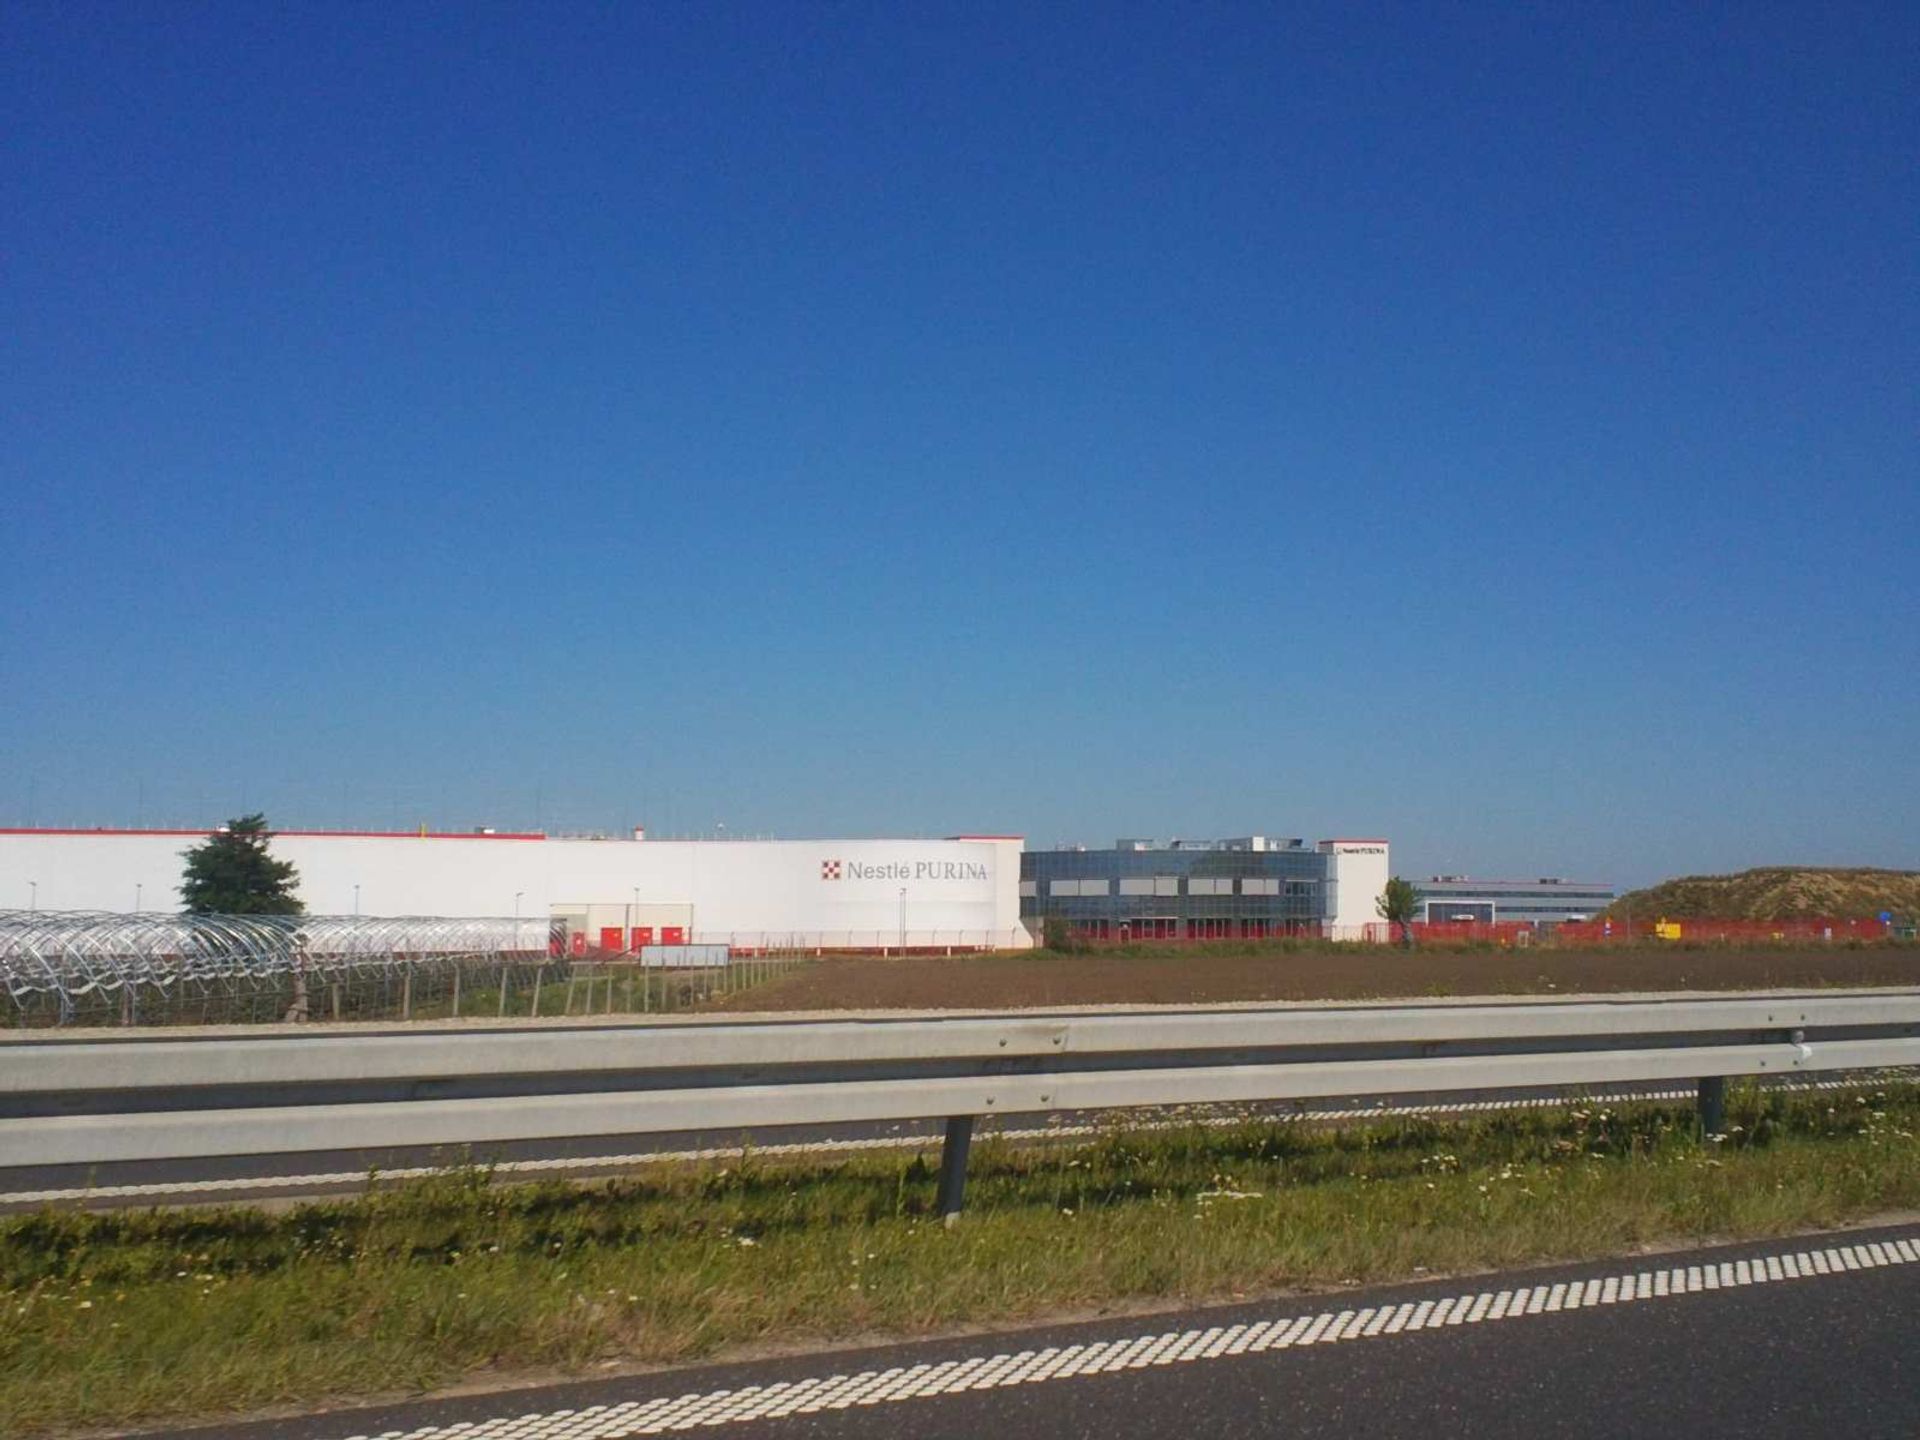  Fabryka Nestlé pod Wrocławiem rozwija się coraz szybciej